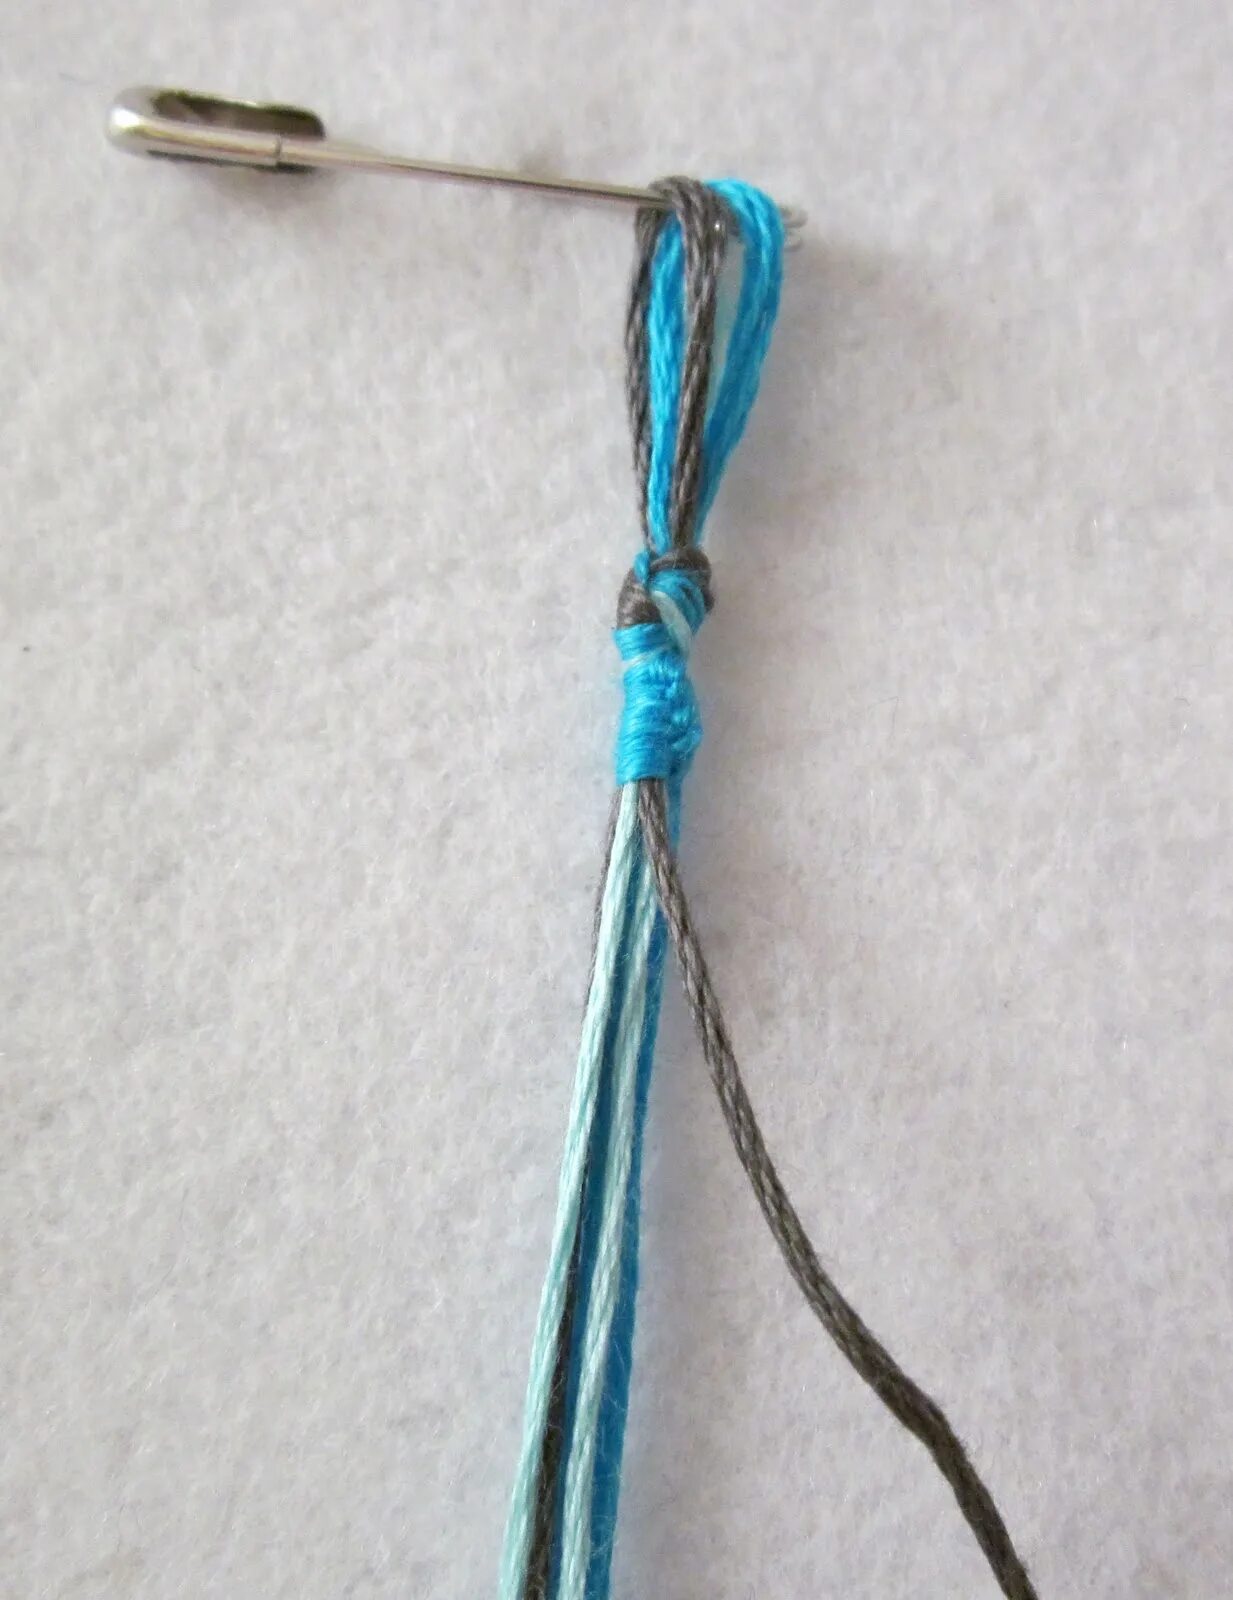 Завязки для цветов. Фенечки узелками. Браслет узелками из ниток. Завязки для фенечек. Завязки для браслета из ниток.